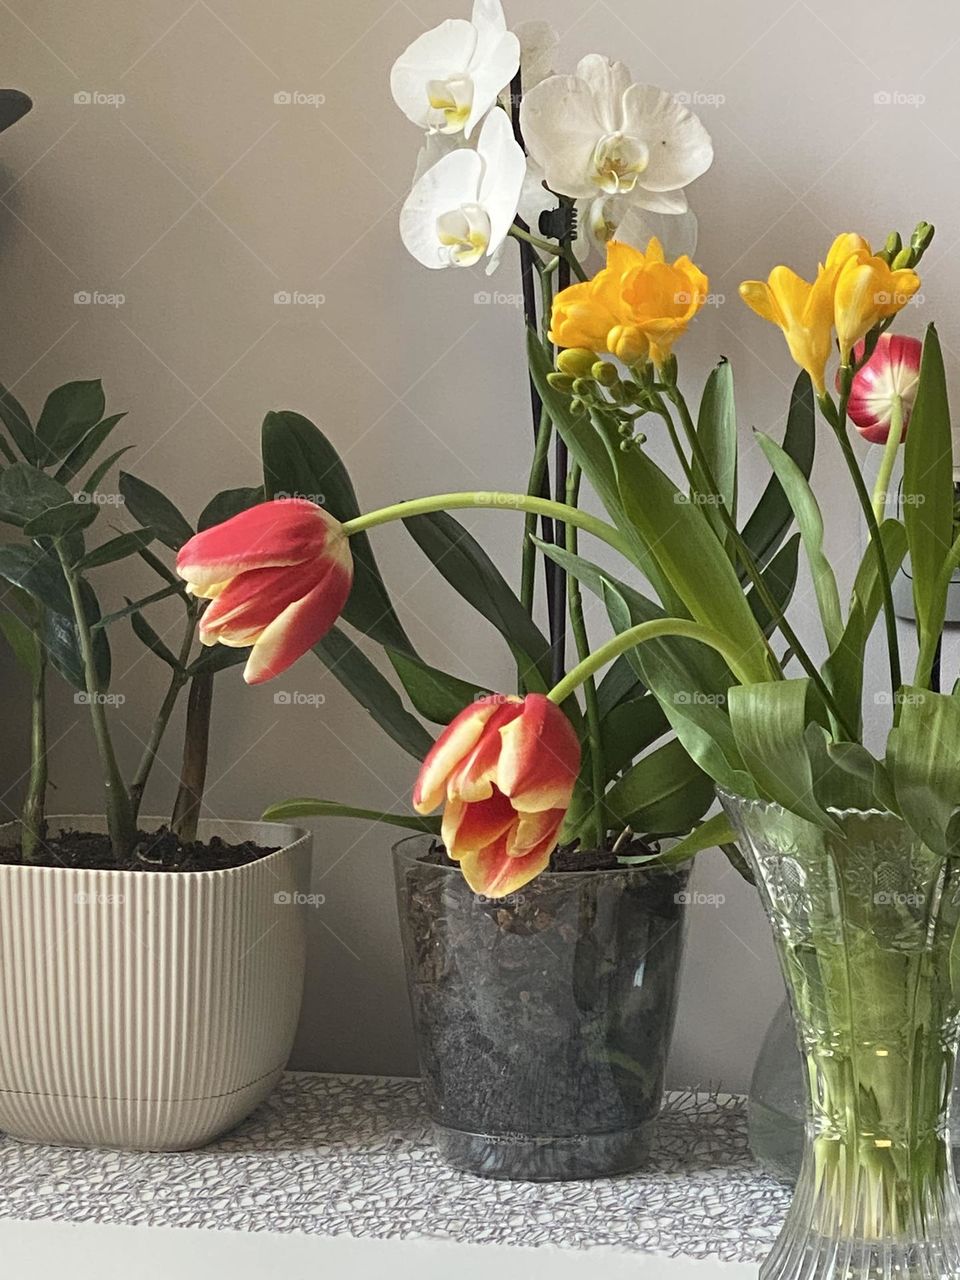 Flowers in vase 